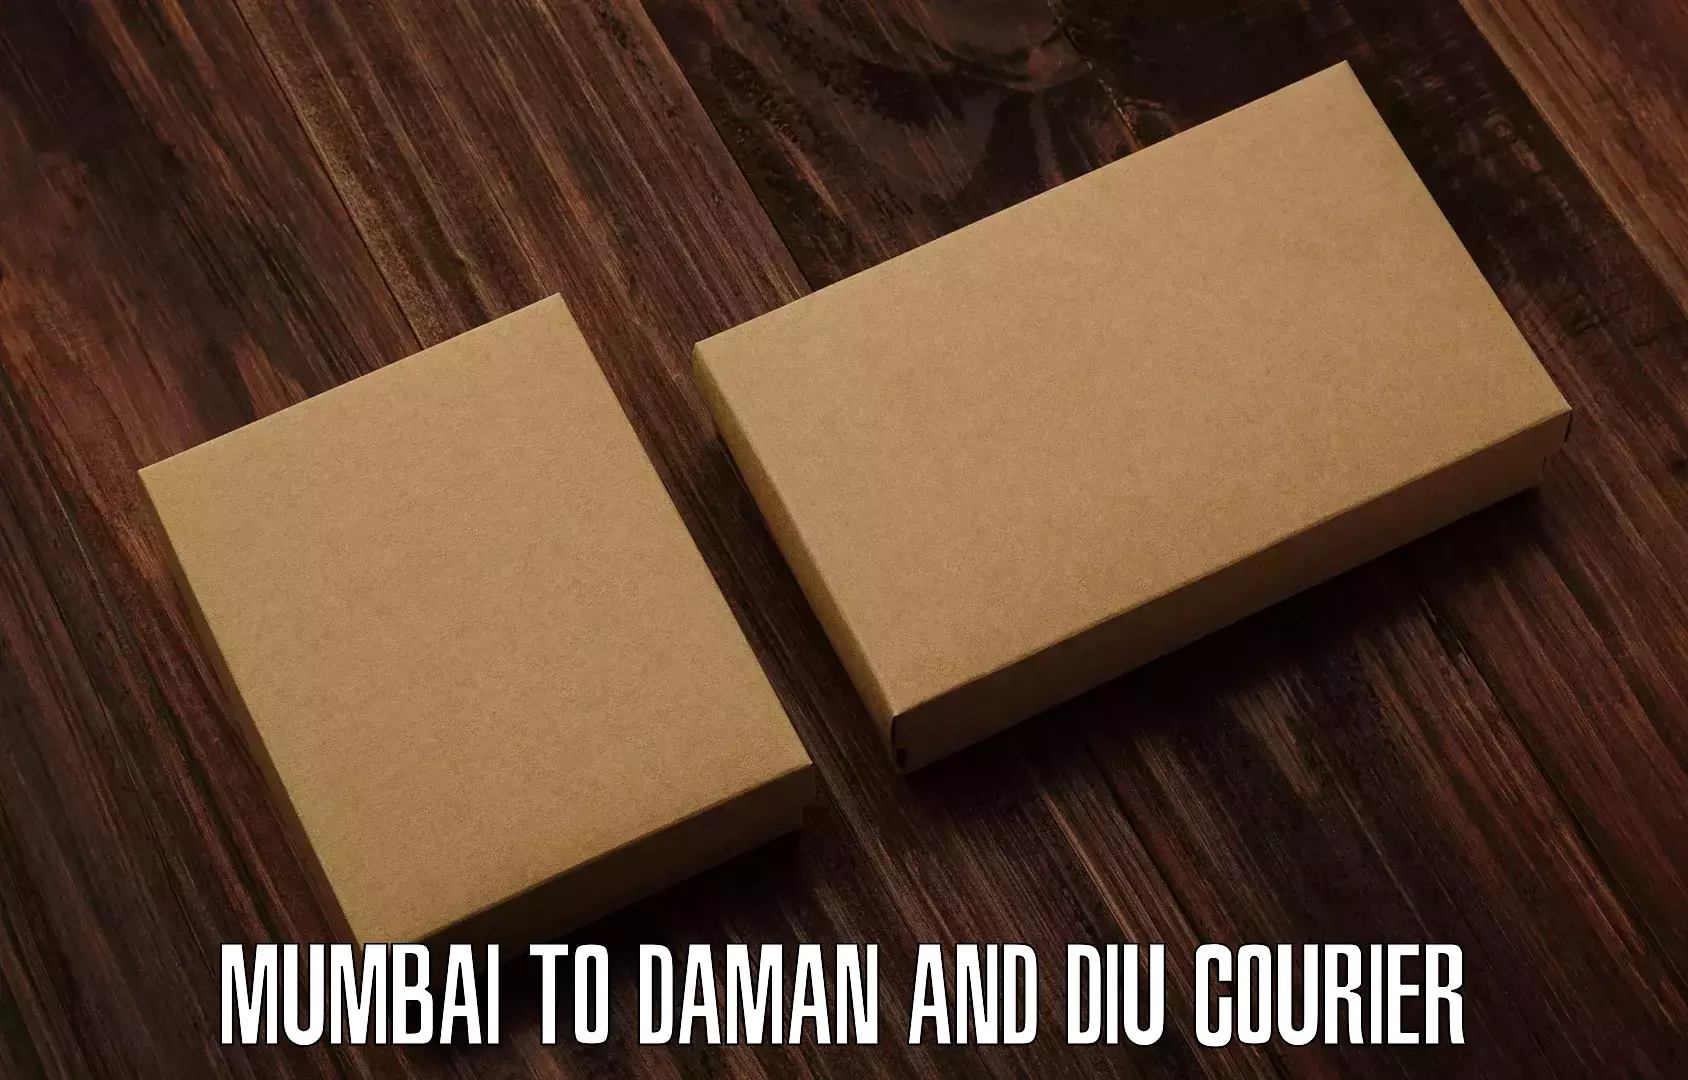 Express courier facilities Mumbai to Diu